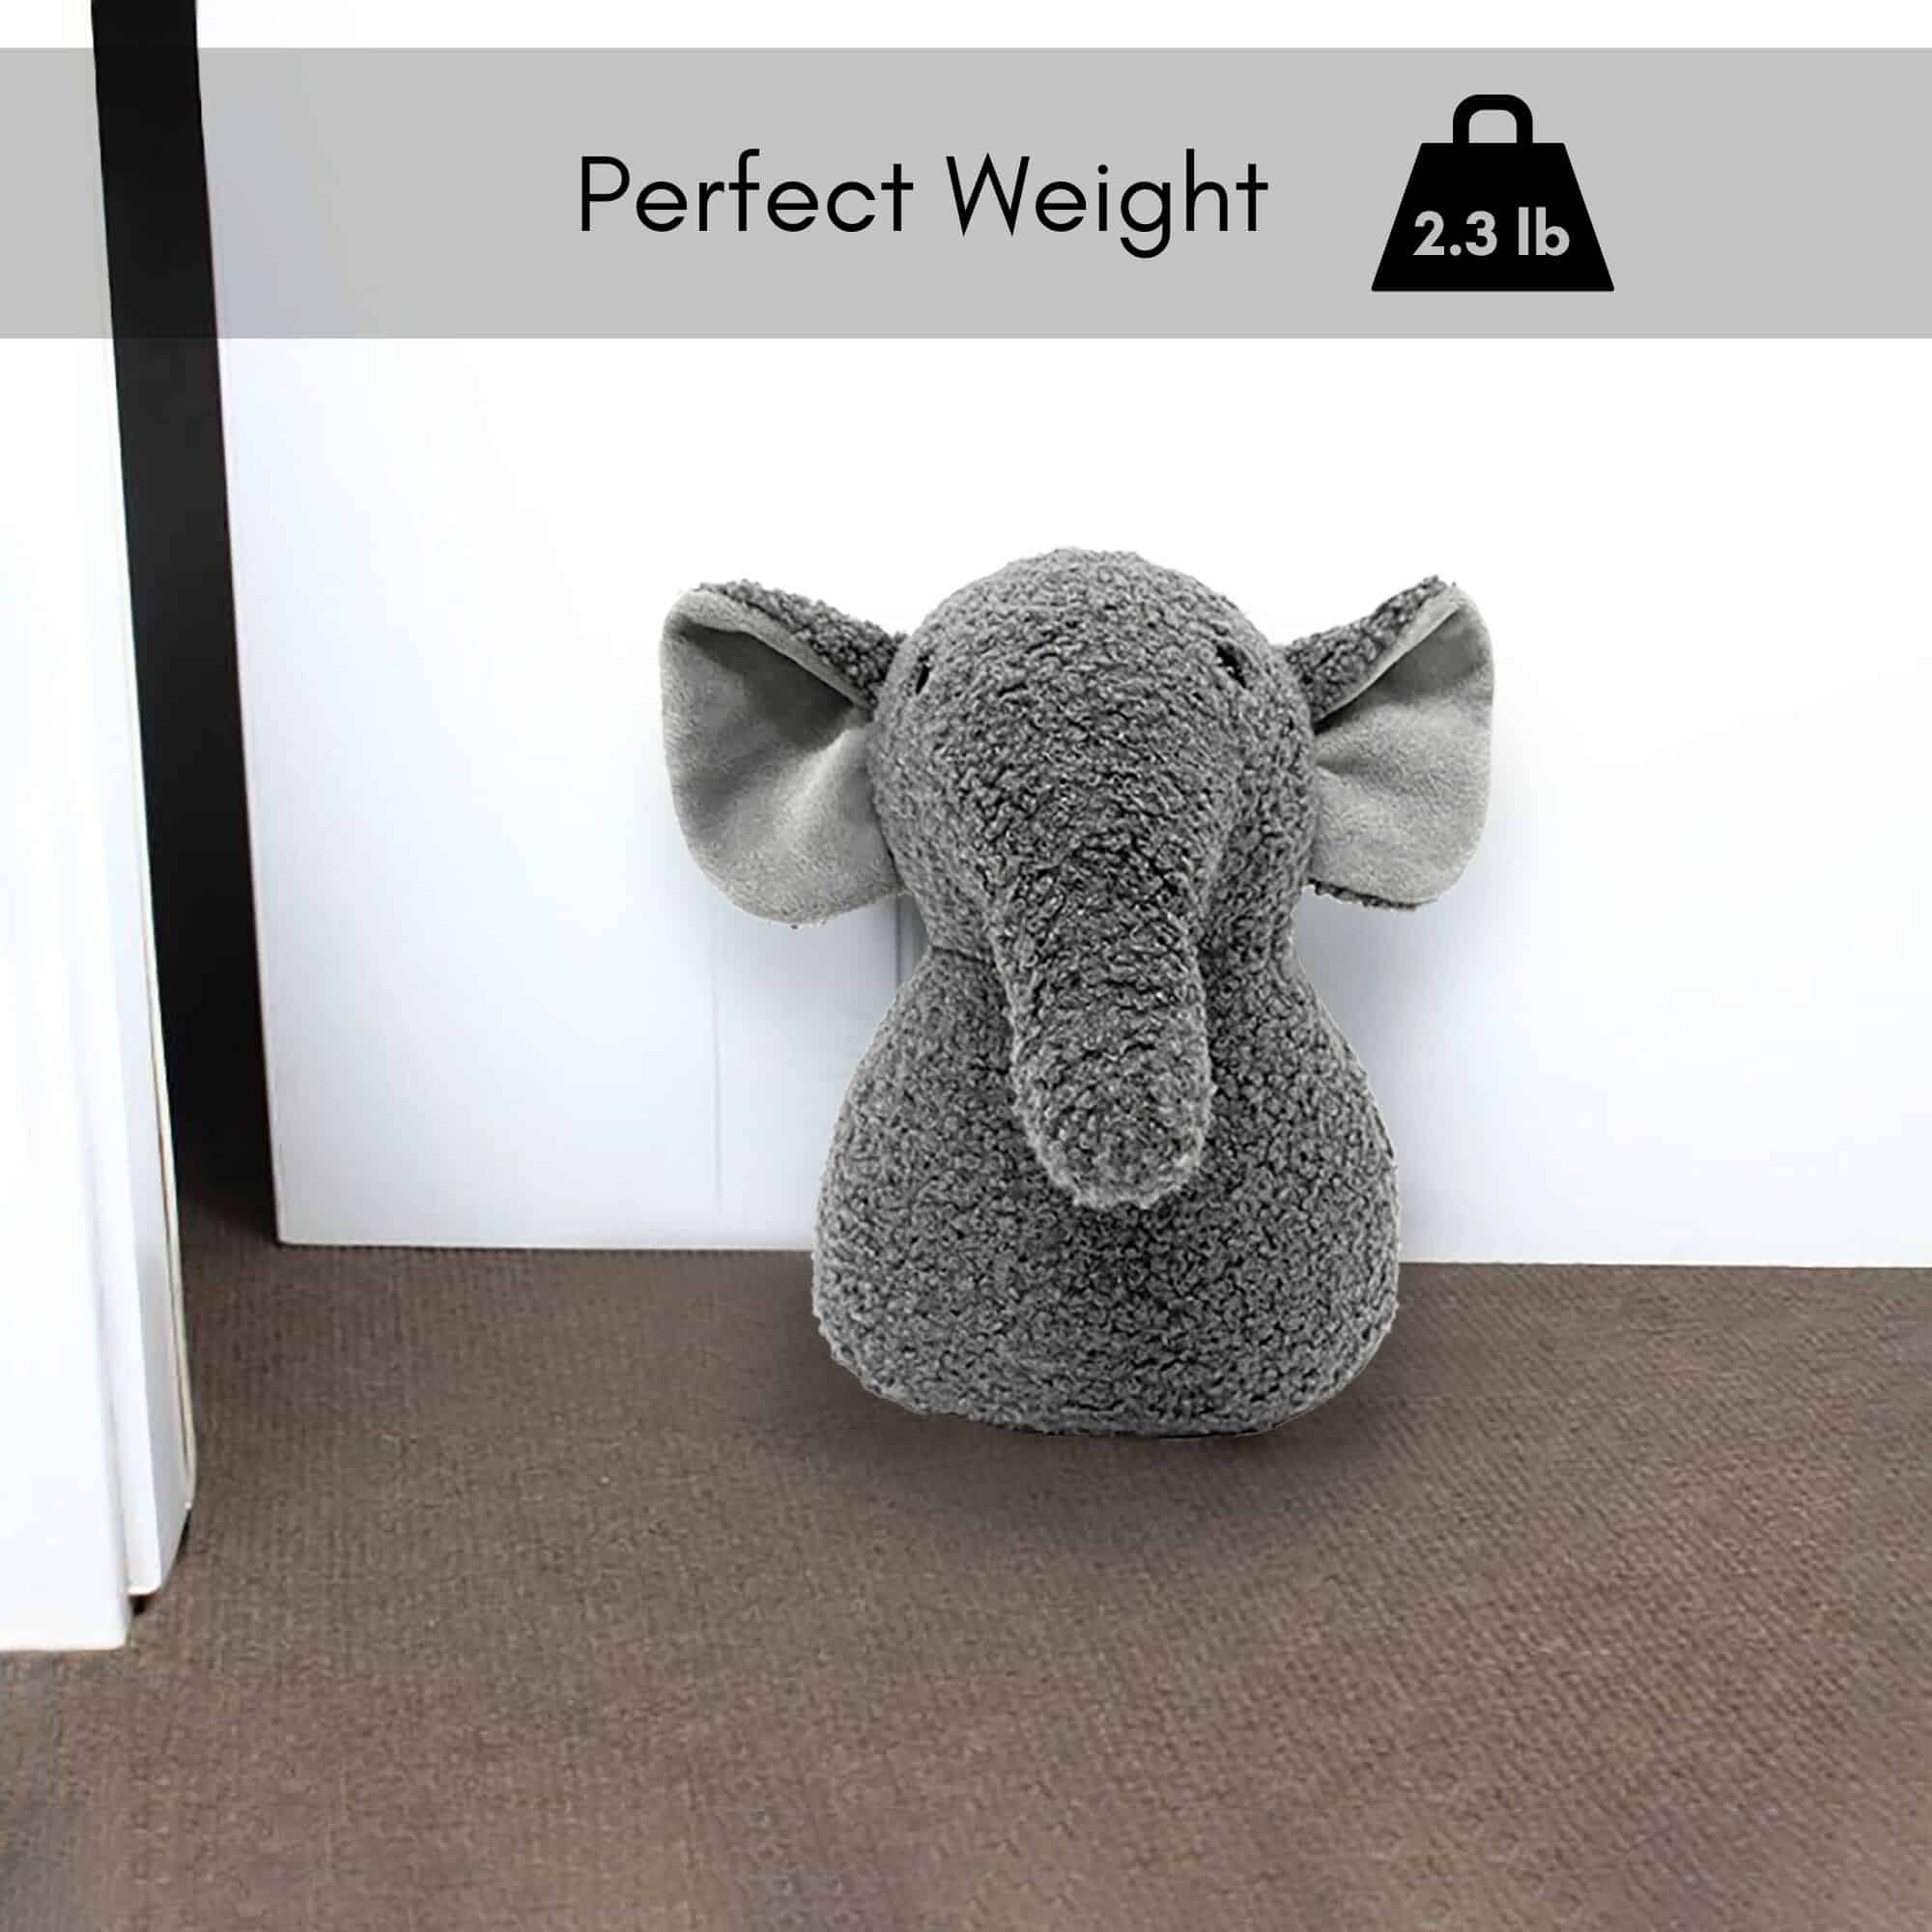 2.3 lb. elephant door stop on the floor at the bottom of the door